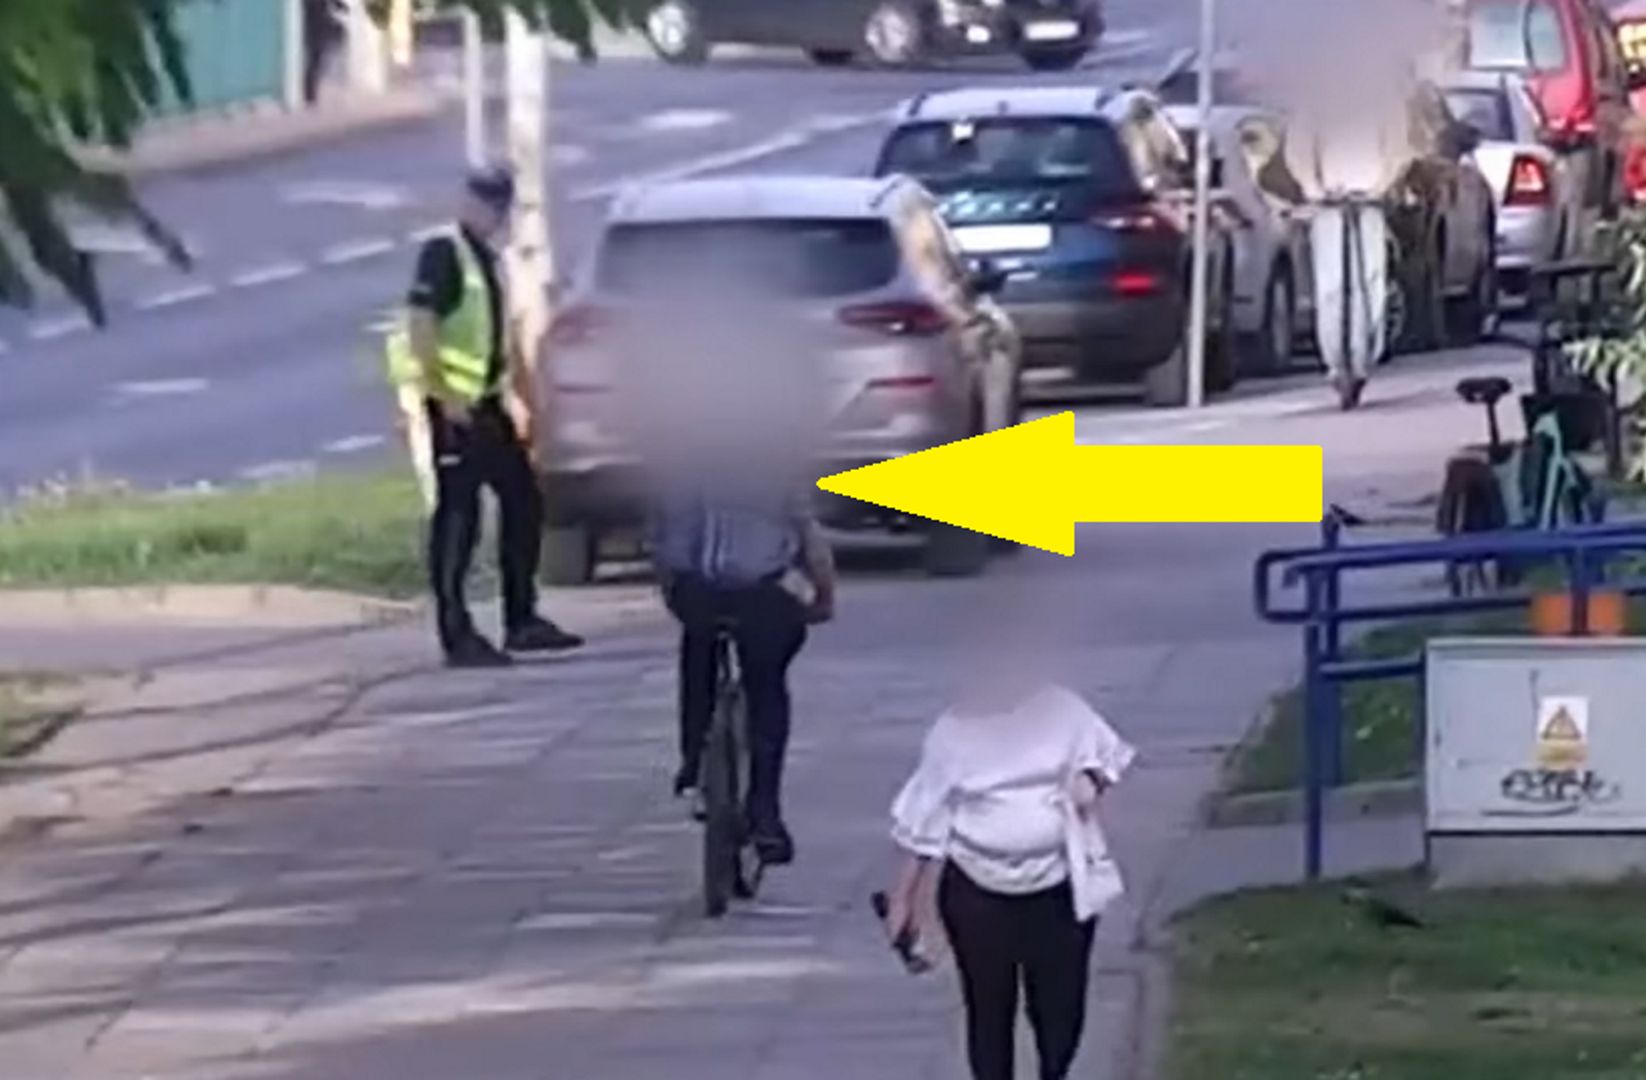 Rowerzysta wpadł jak śliwka w kompot. Policja pokazała wideo z Olsztyna